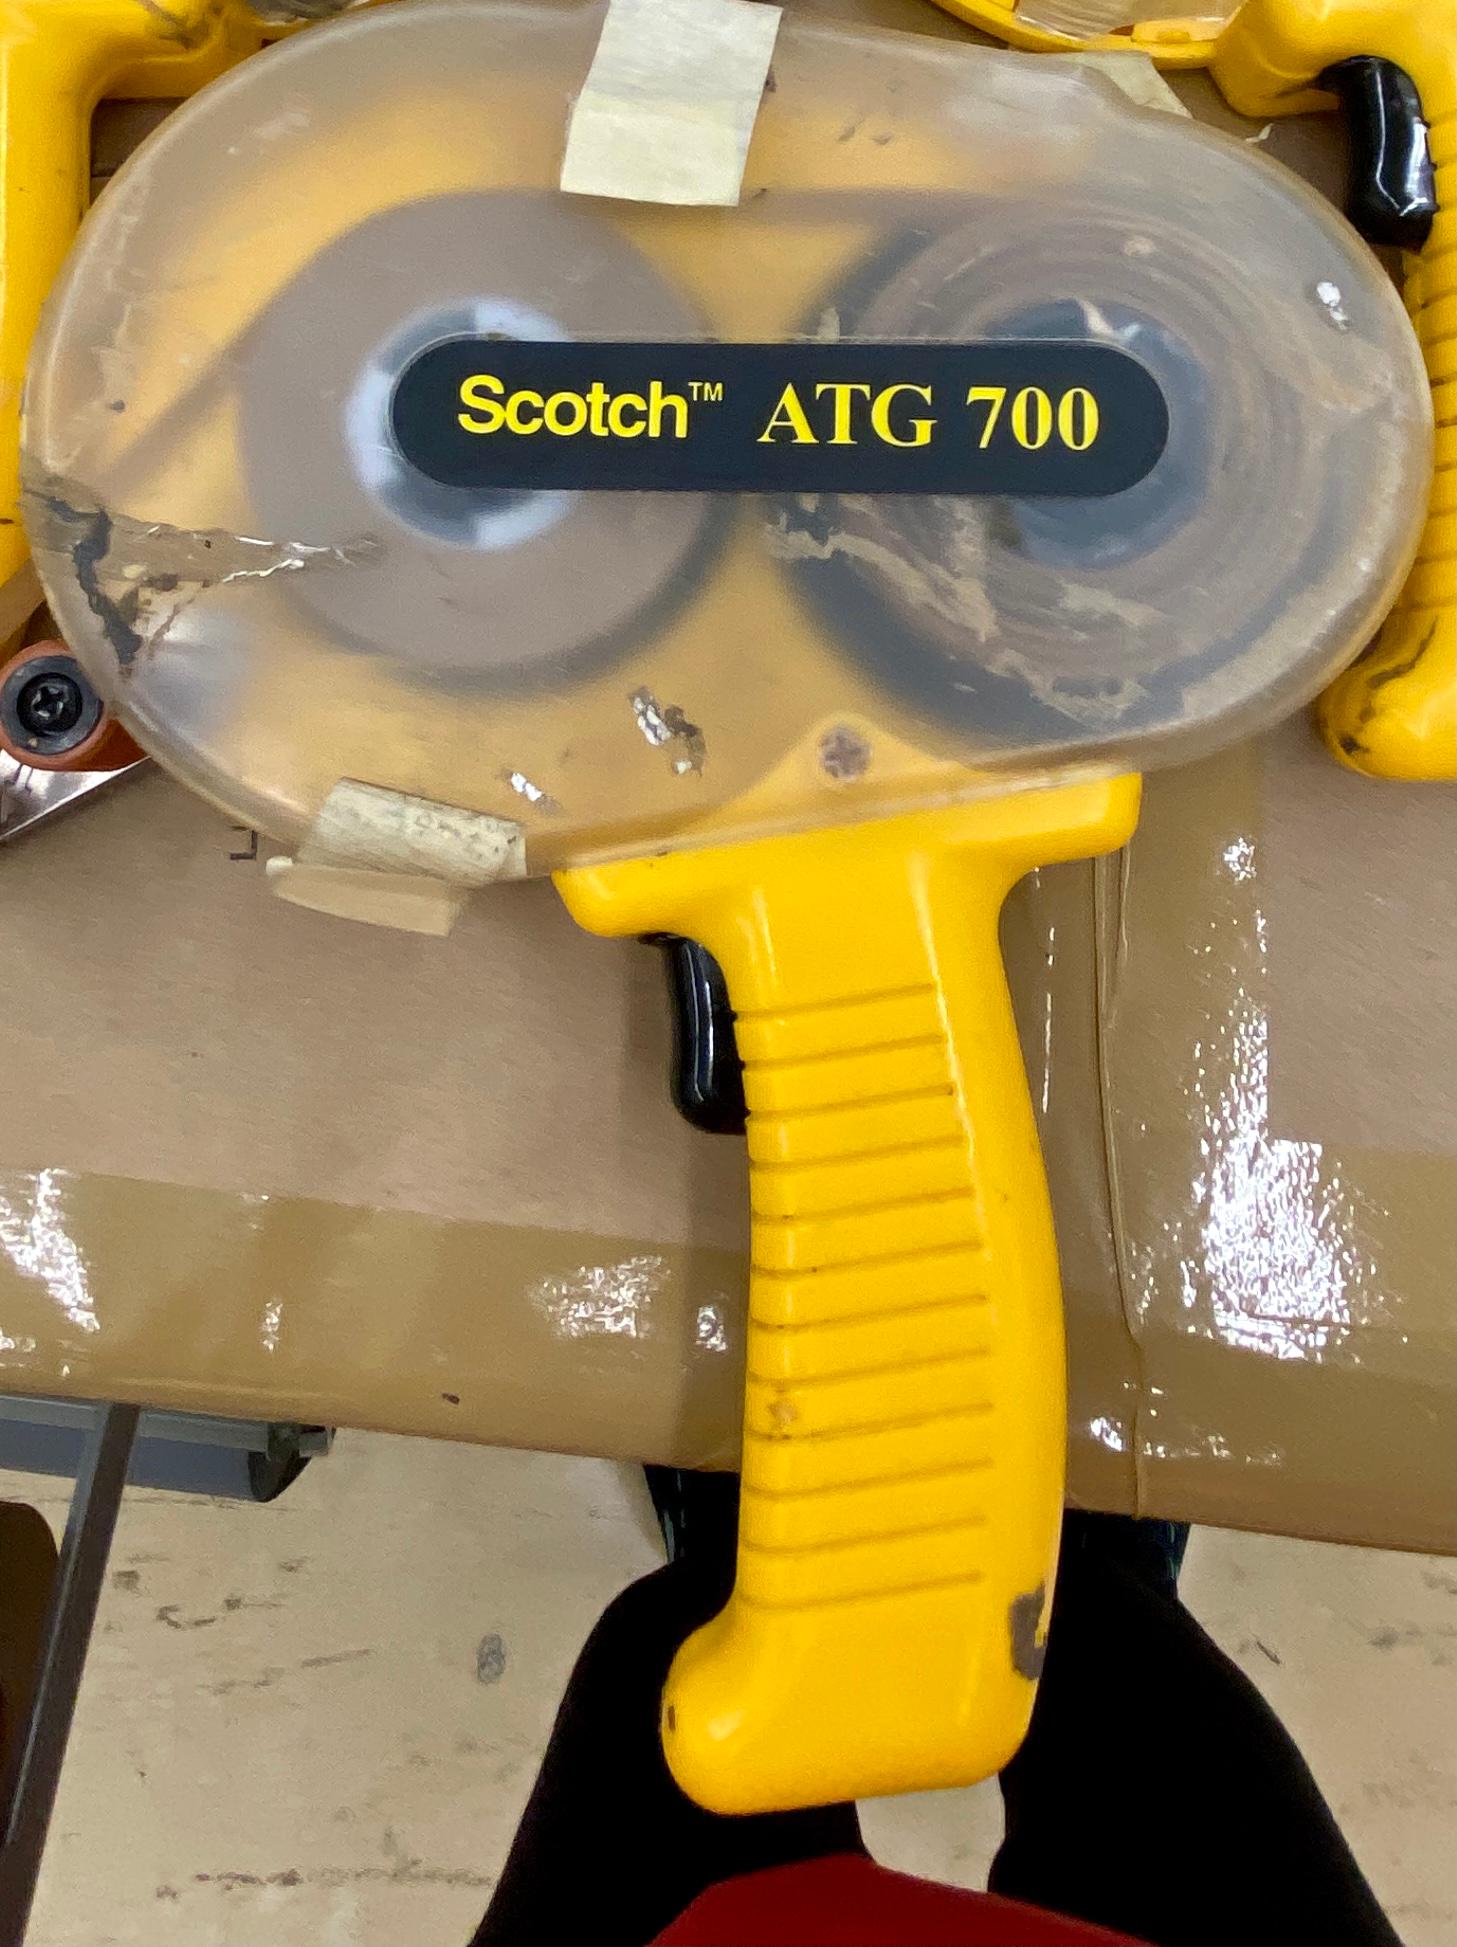 Scotch Tape Gun